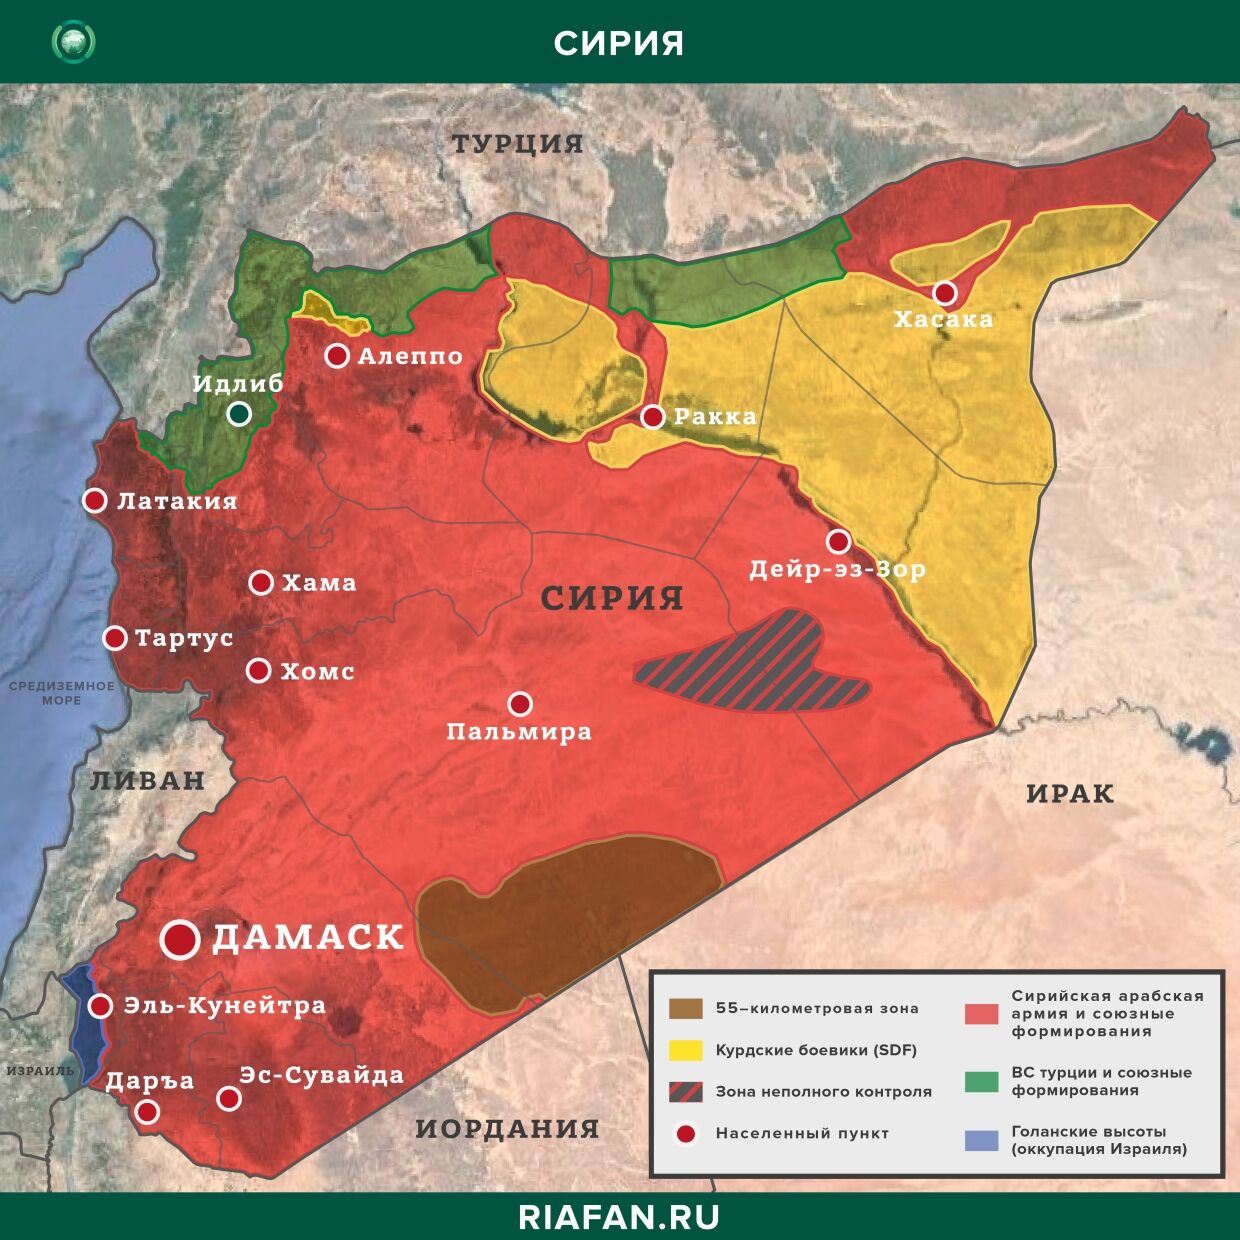 Сирия новости 7 апреля 12.30: в Дейр-эз-Зоре погиб американский военнослужащий, в Алеппо ликвидированы 9 боевиков YPG